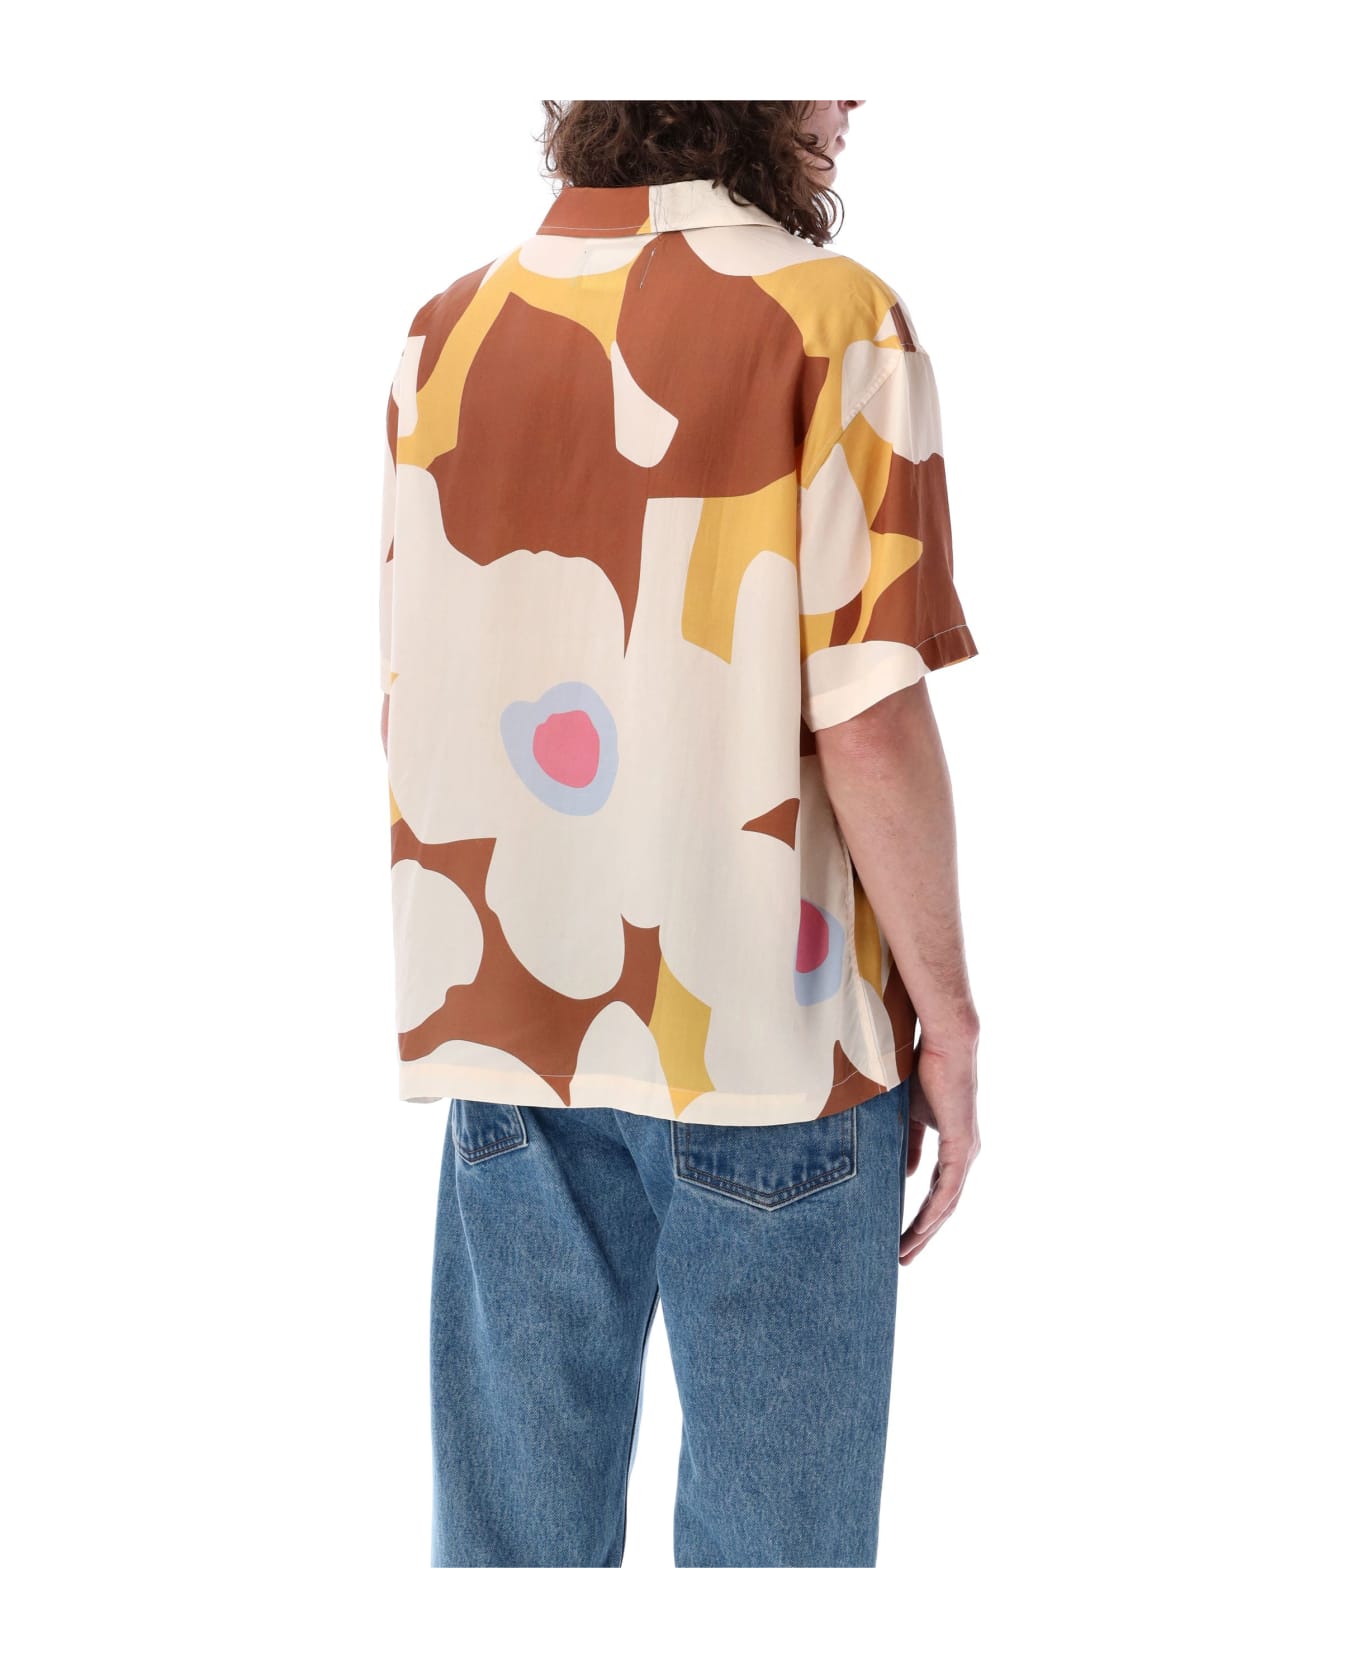 Awake NY Floral Camp Shirt - BROWN MULTI シャツ